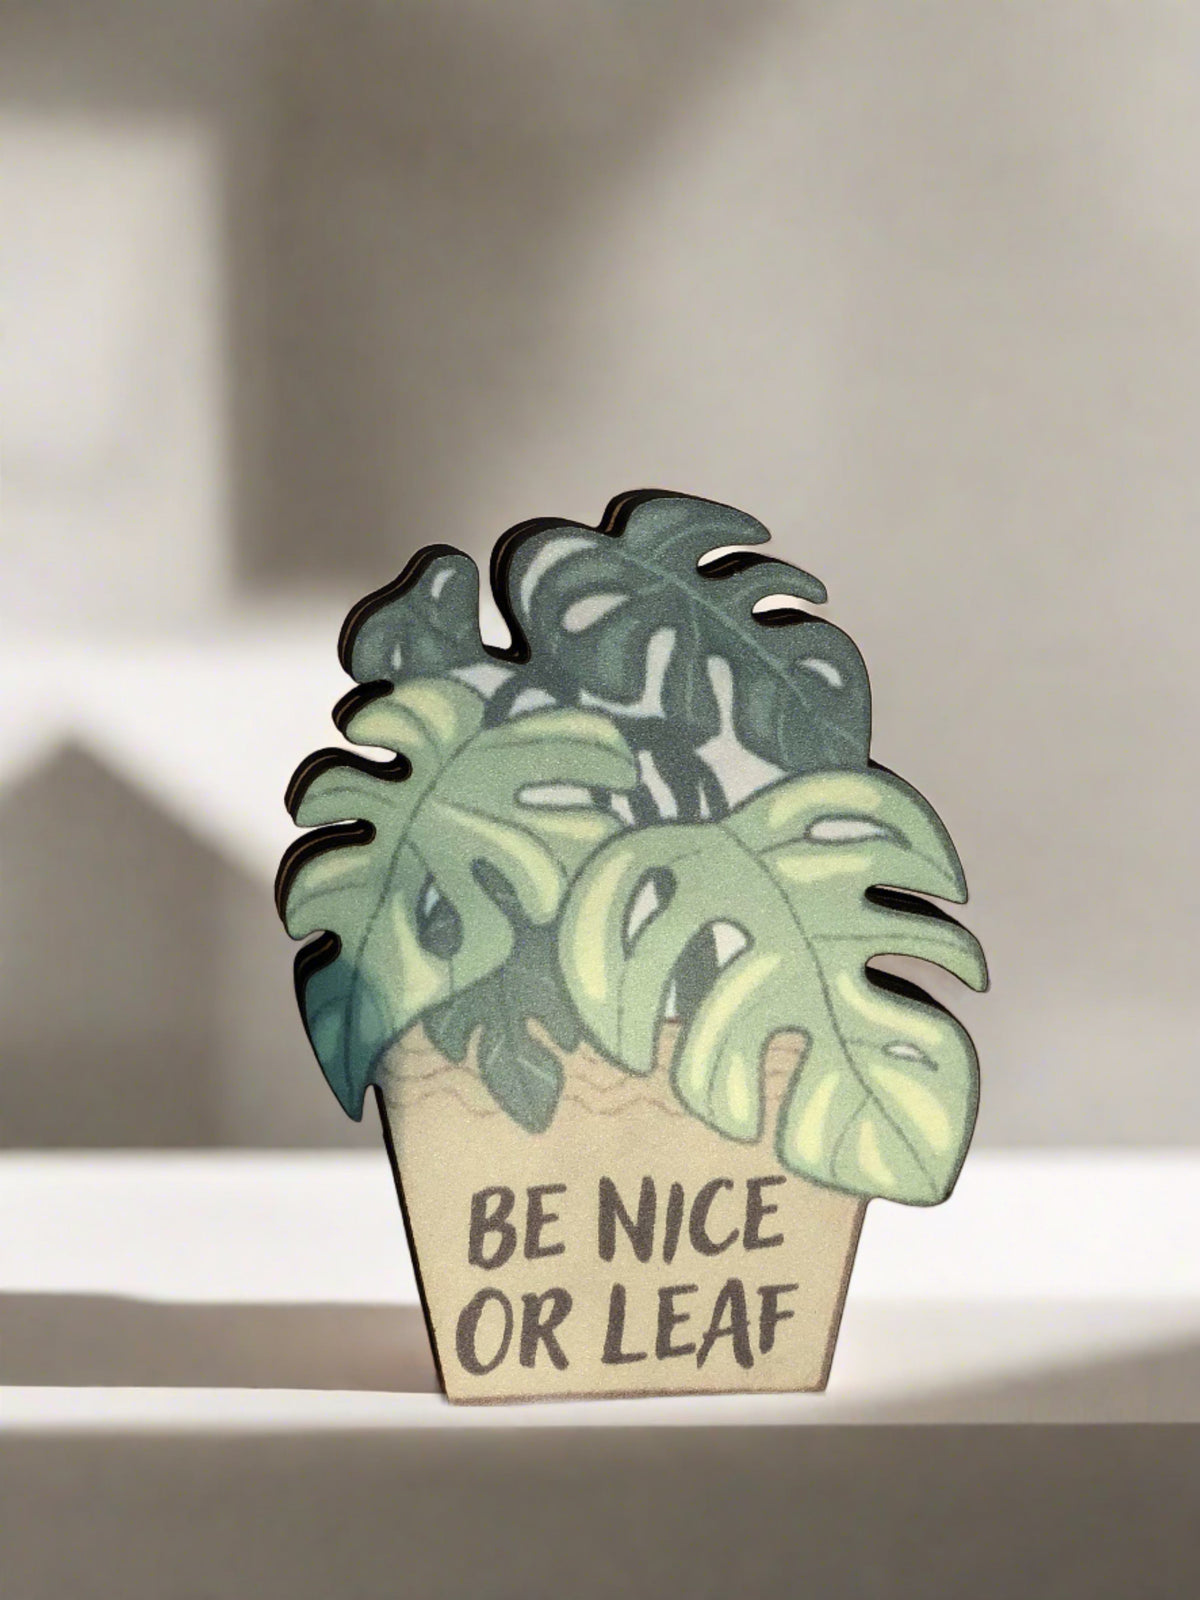 Desk Pet - Be nice or leaf